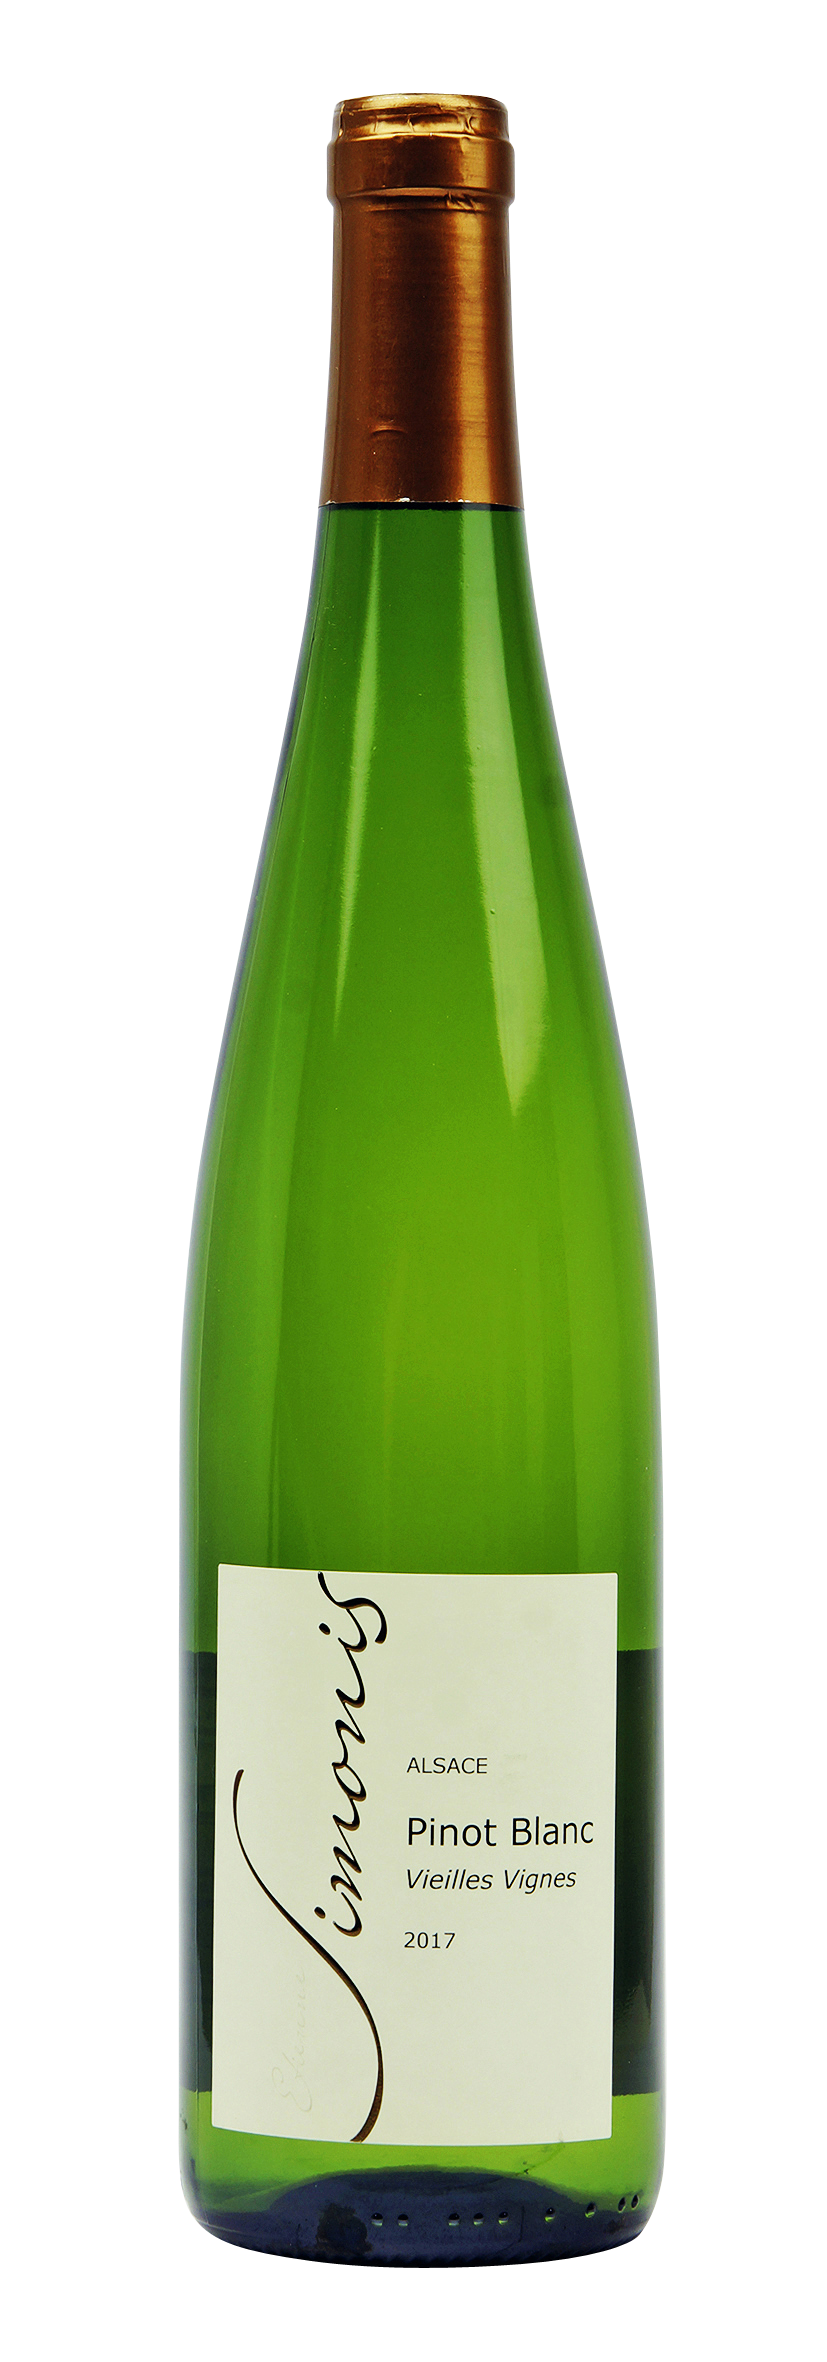 Alsace AOC Pinot Blanc Vieilles Vignes 2017